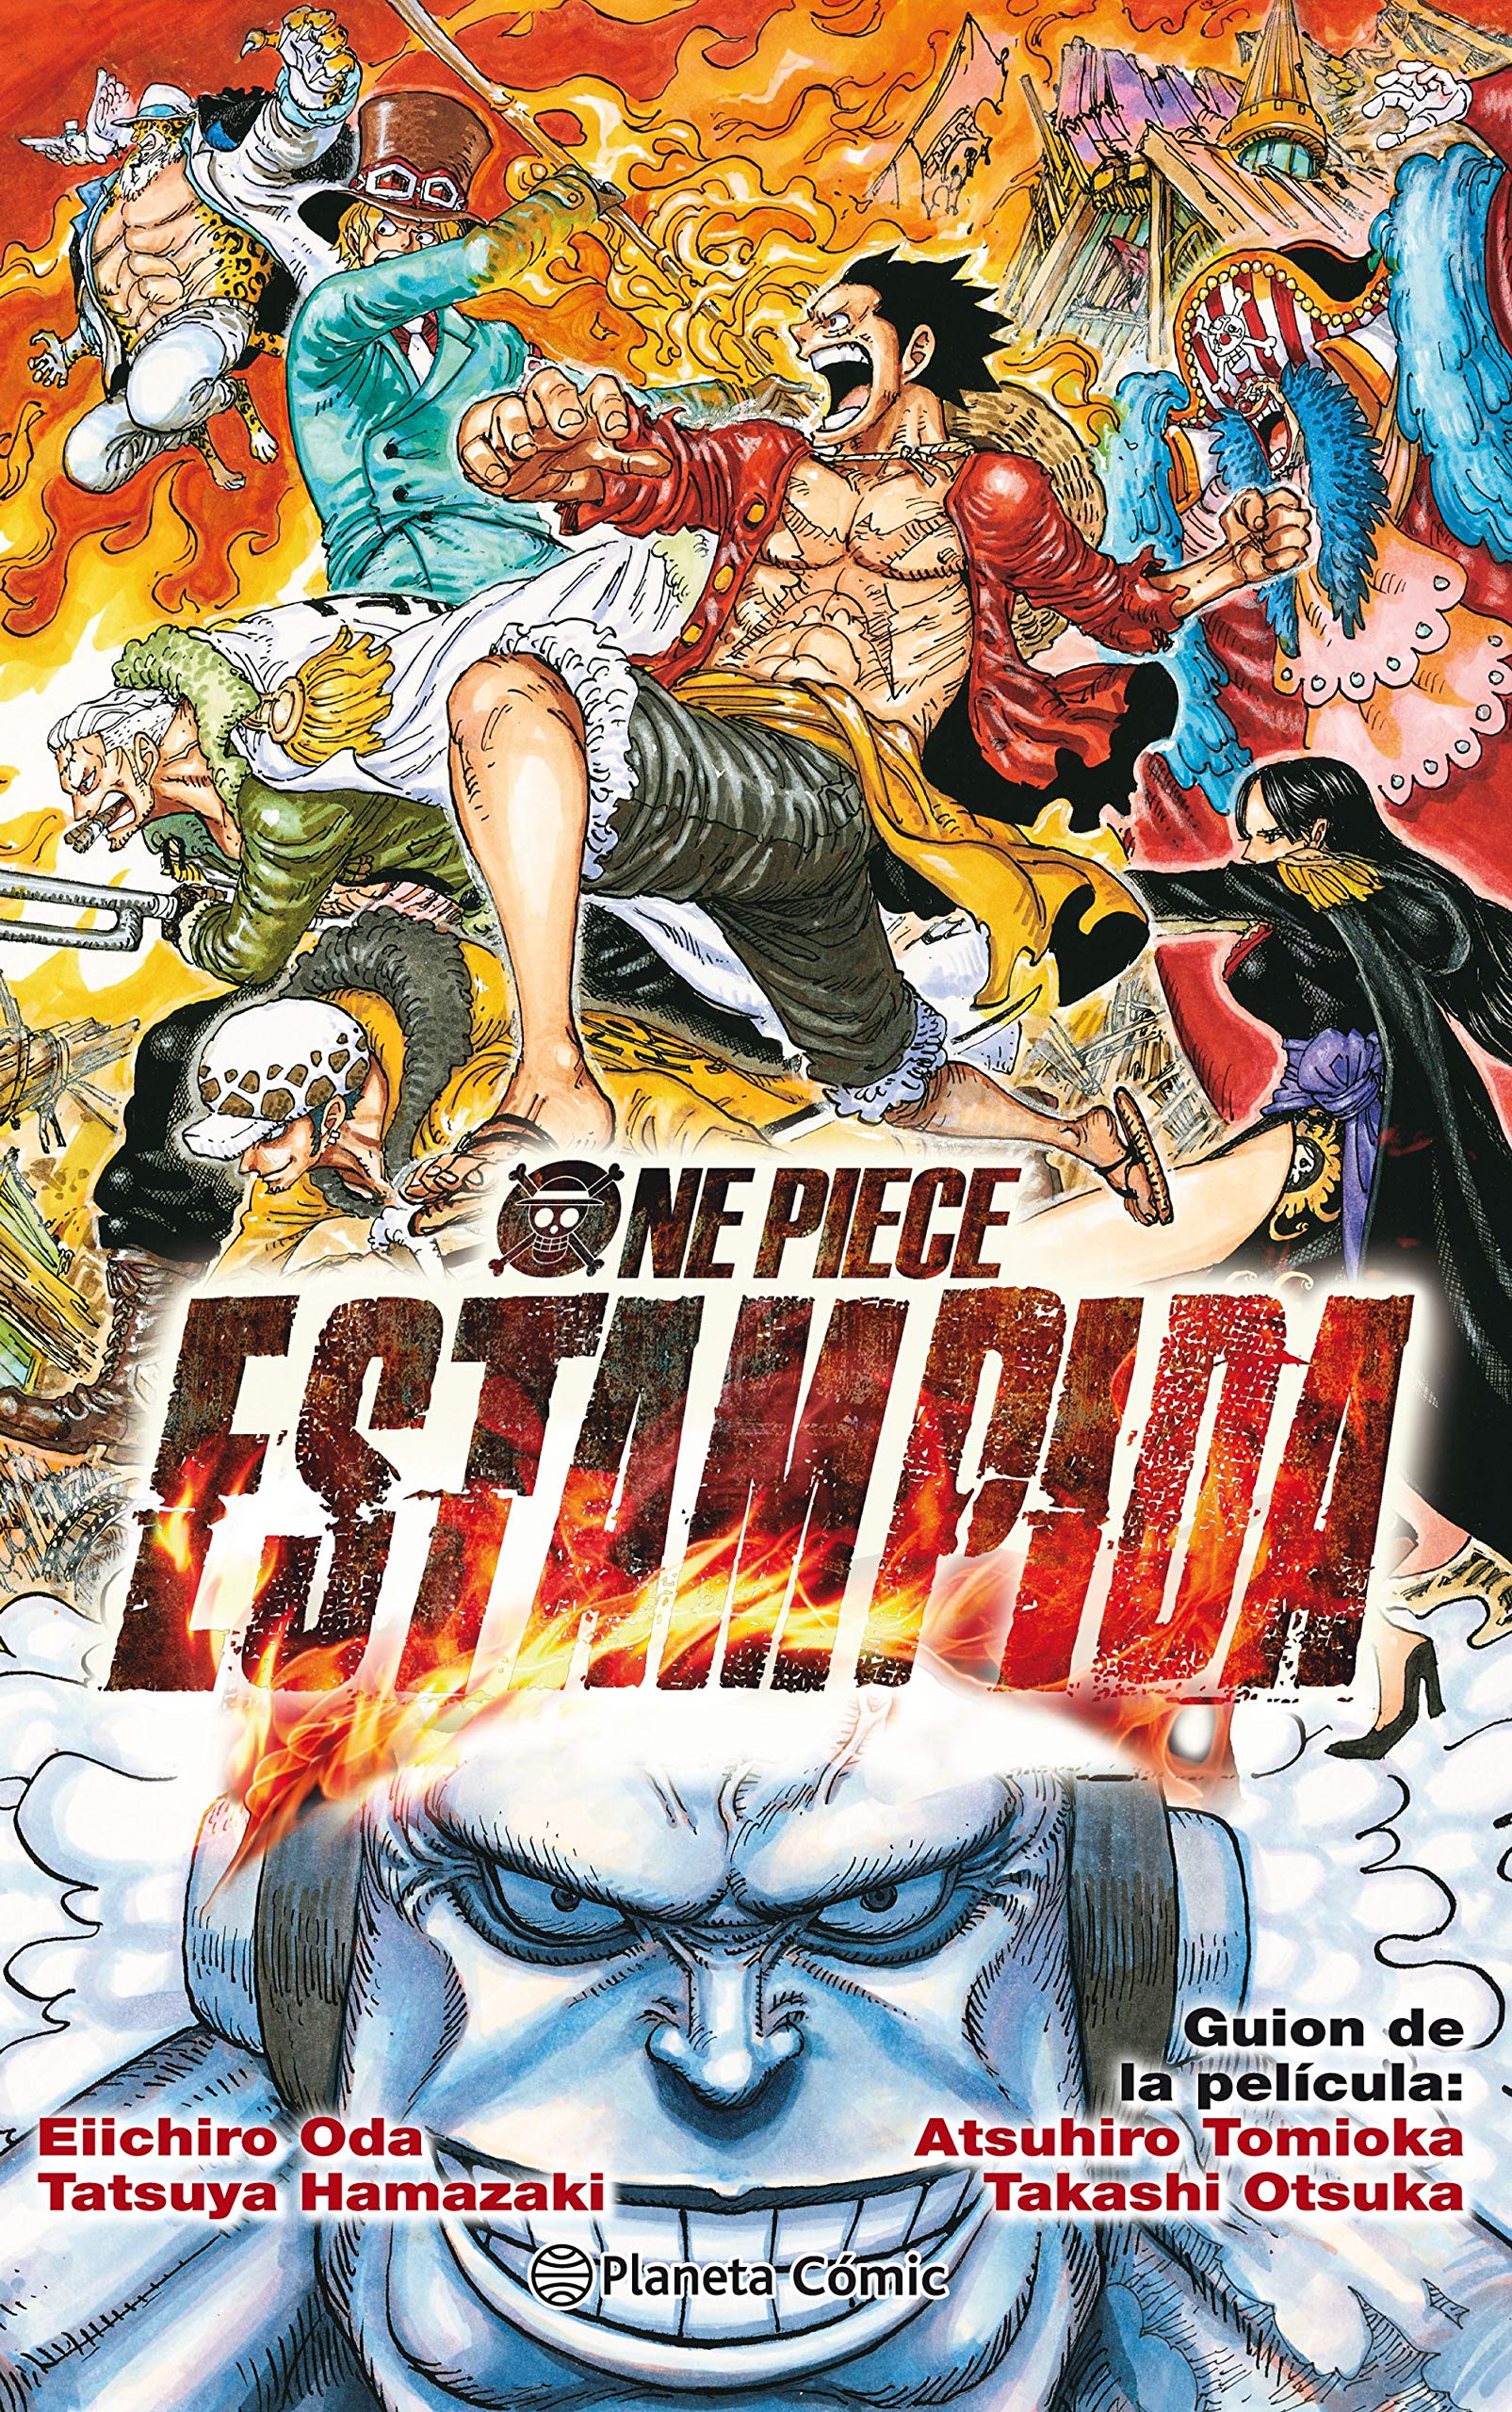 One Piece Stampede Nueva Pelicula El 9 De Agosto De 19 Dvd Y Blu Ray El 27 De Marzo De En Espana Pagina 43 Foro De One Piece Pirateking